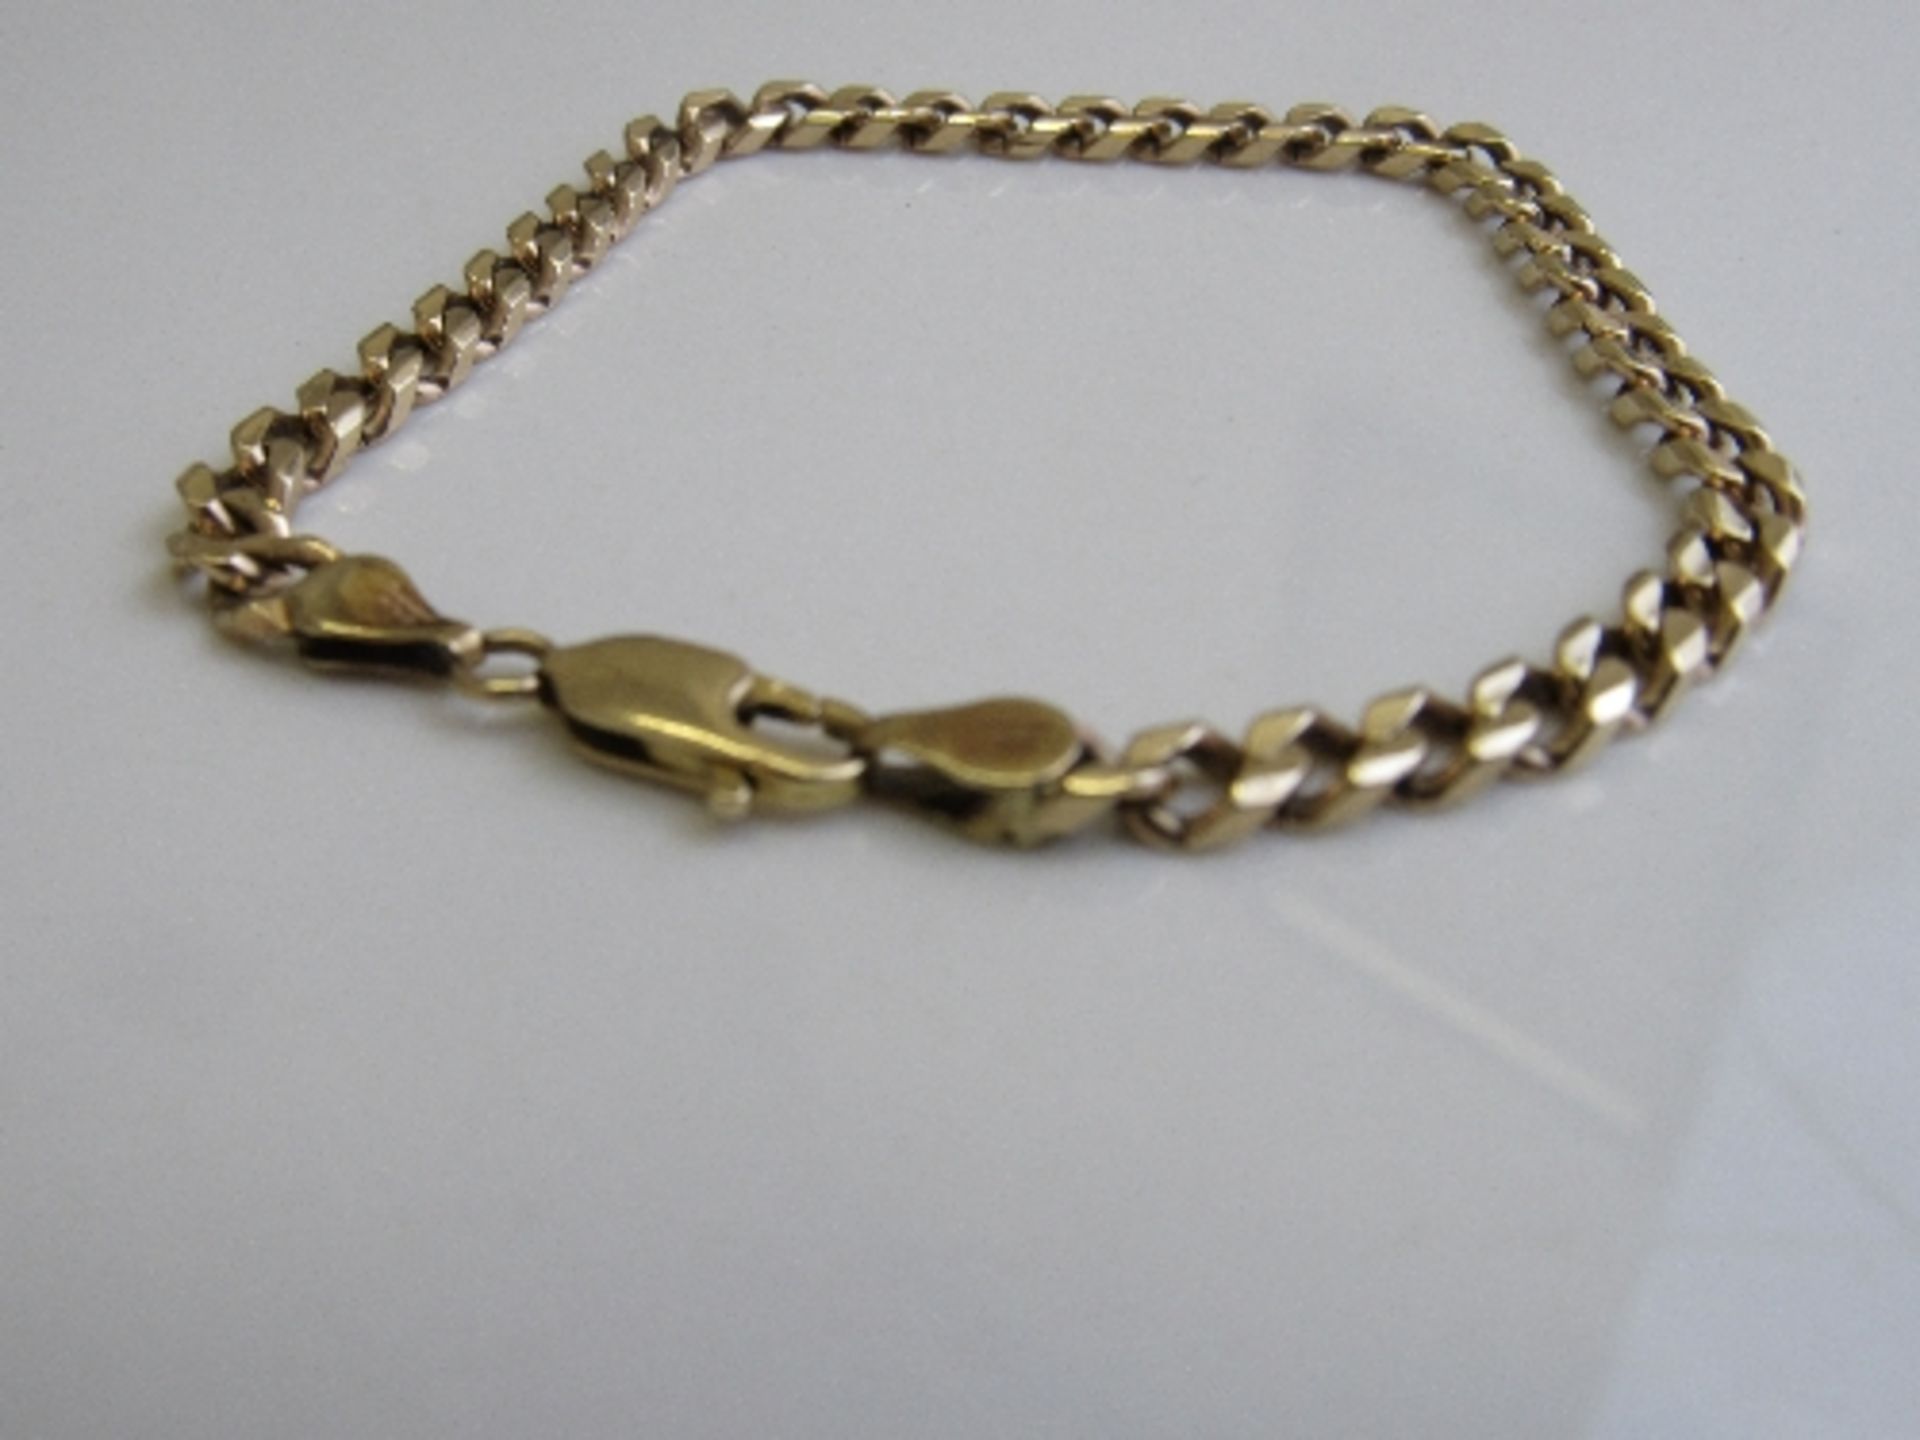 9ct gold link bracelet, weight 11.8gms, length 20cms. Estimate £130-150 - Image 2 of 3